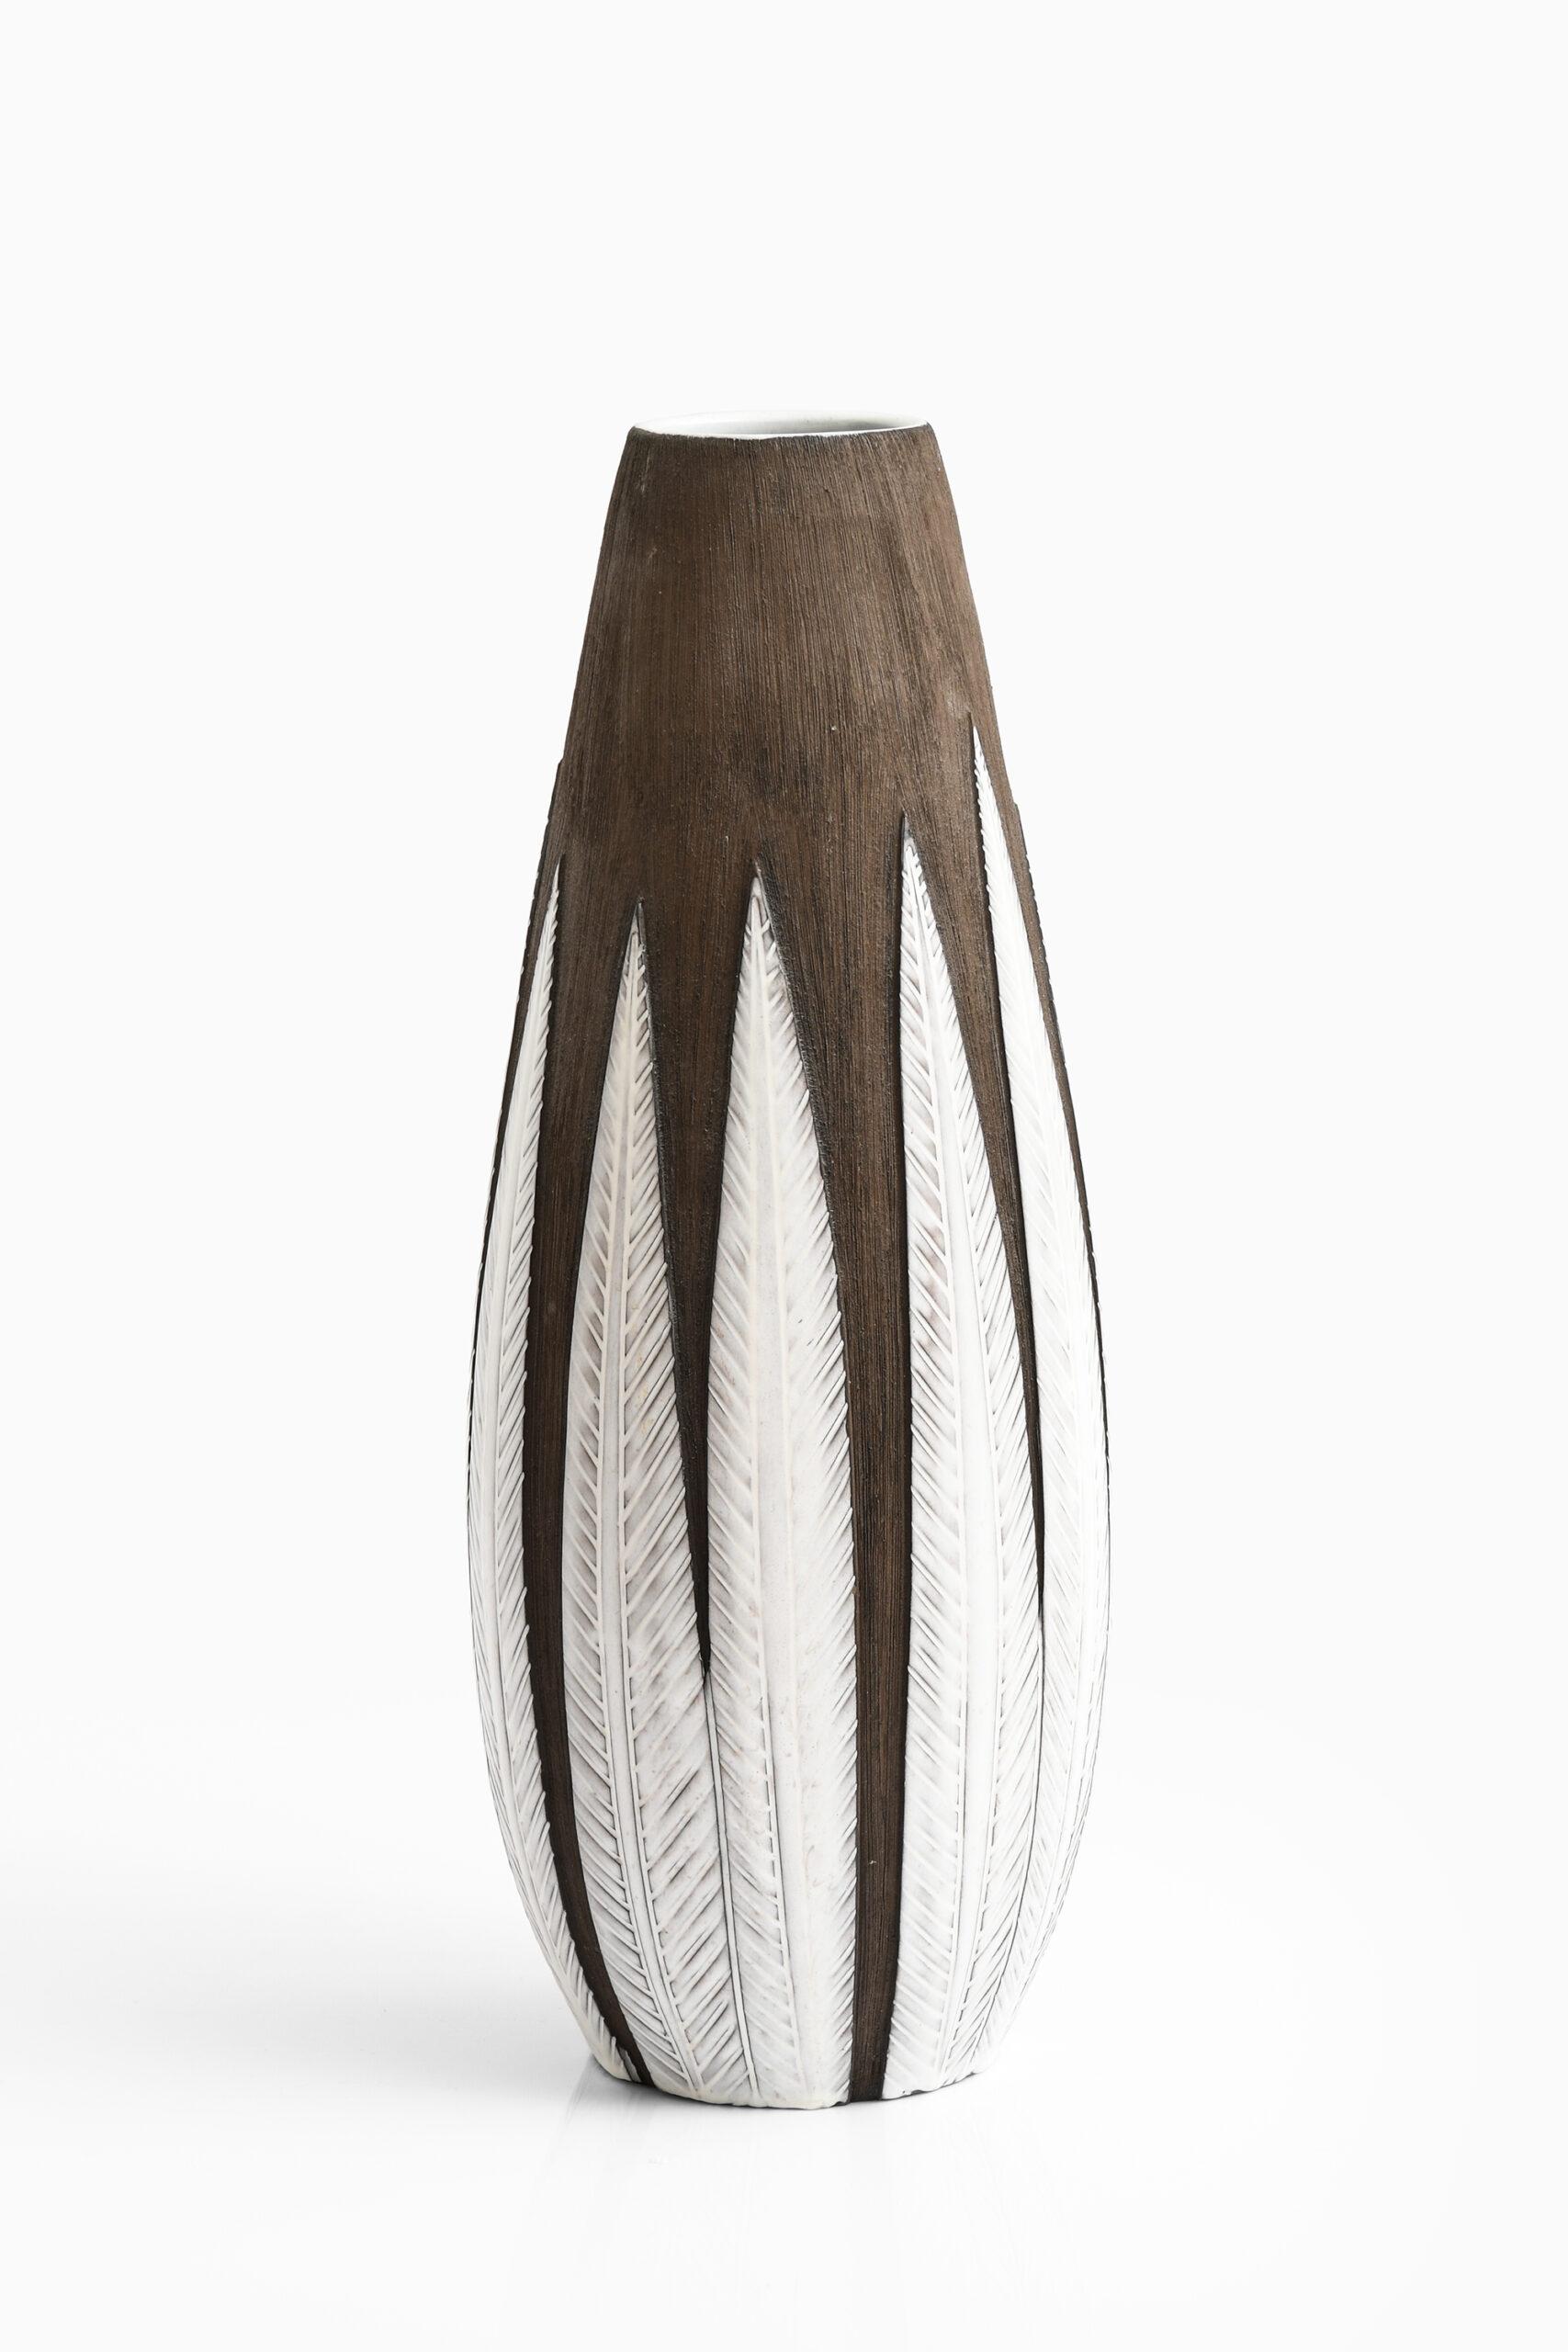 Scandinavian Modern Anna-Lisa Thomson Floor Vase Model Paprika Produced by Upsala Ekeby in Sweden For Sale